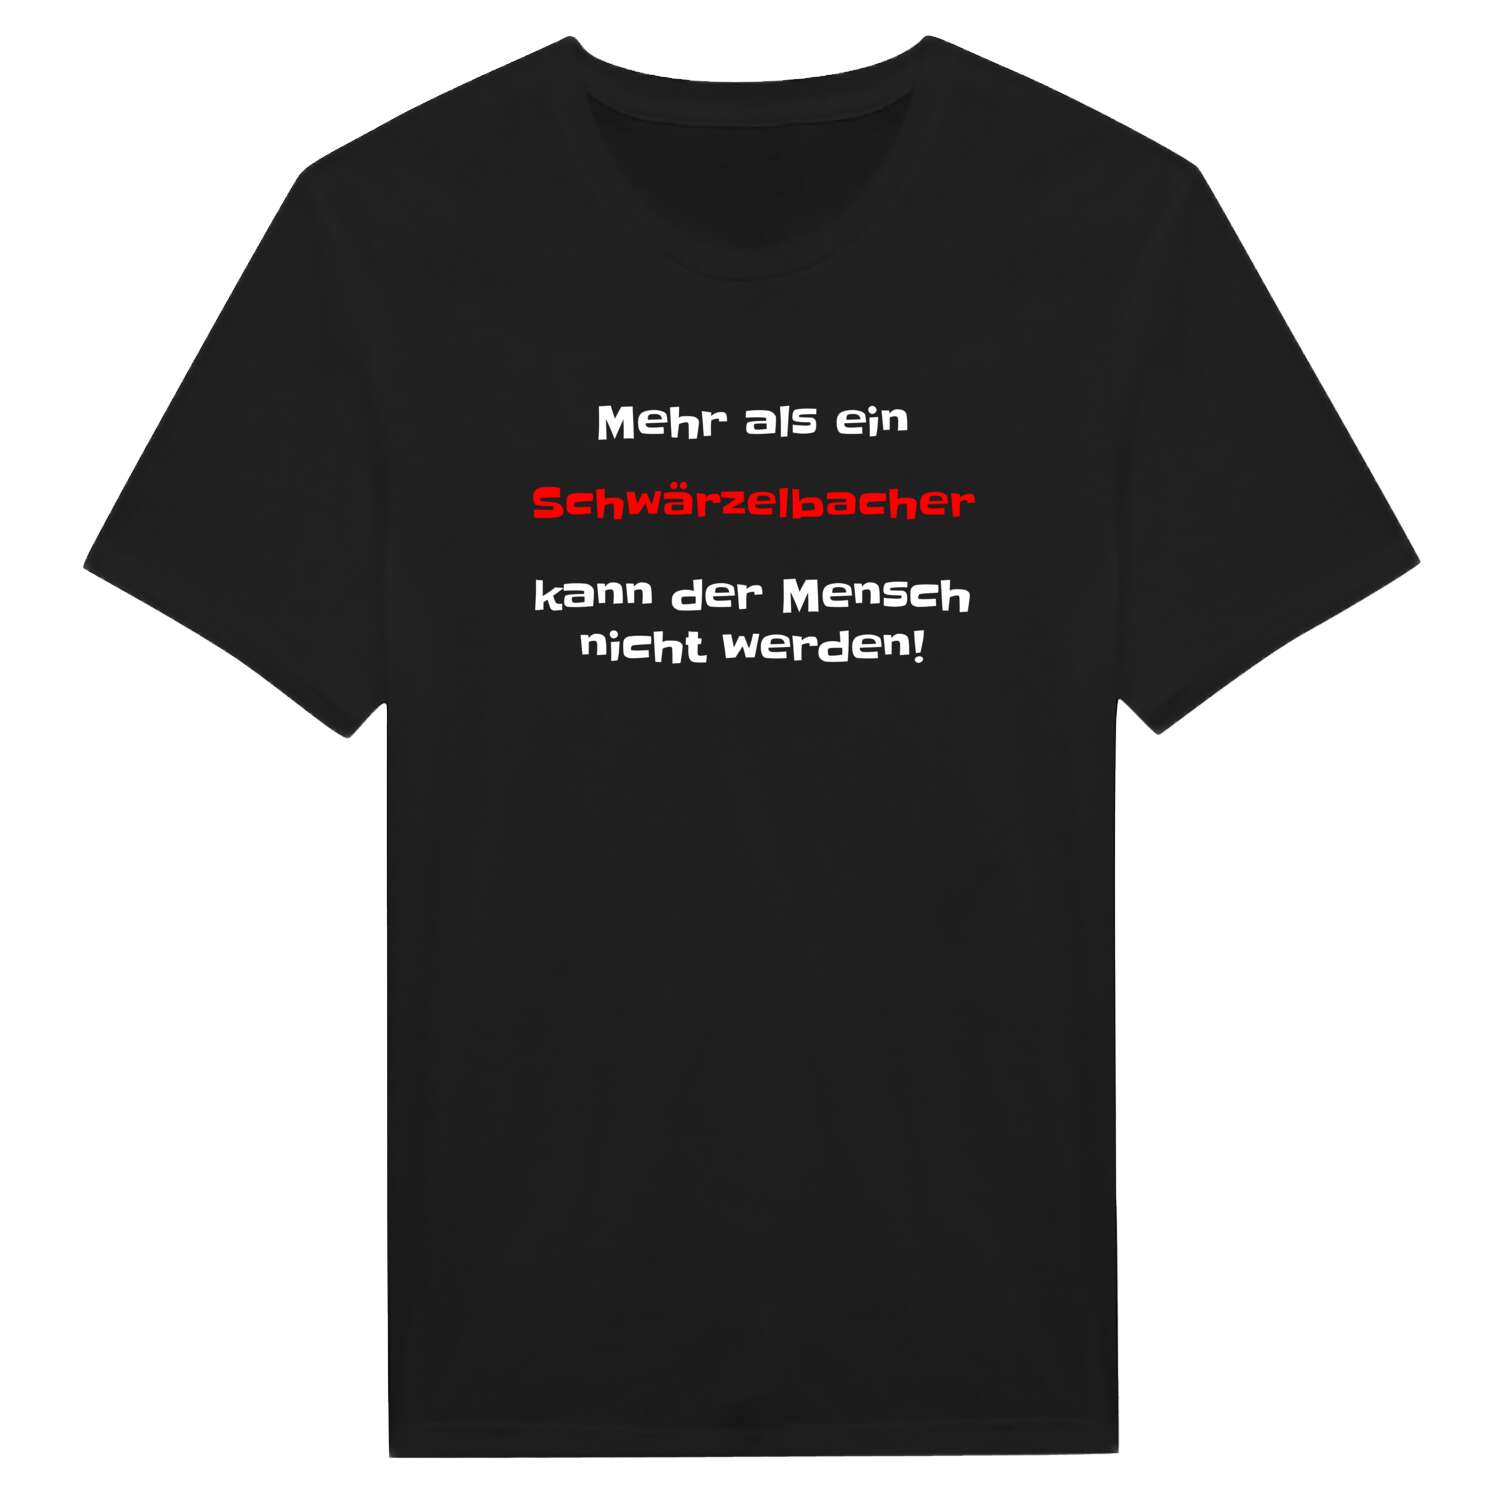 Schwärzelbach T-Shirt »Mehr als ein«